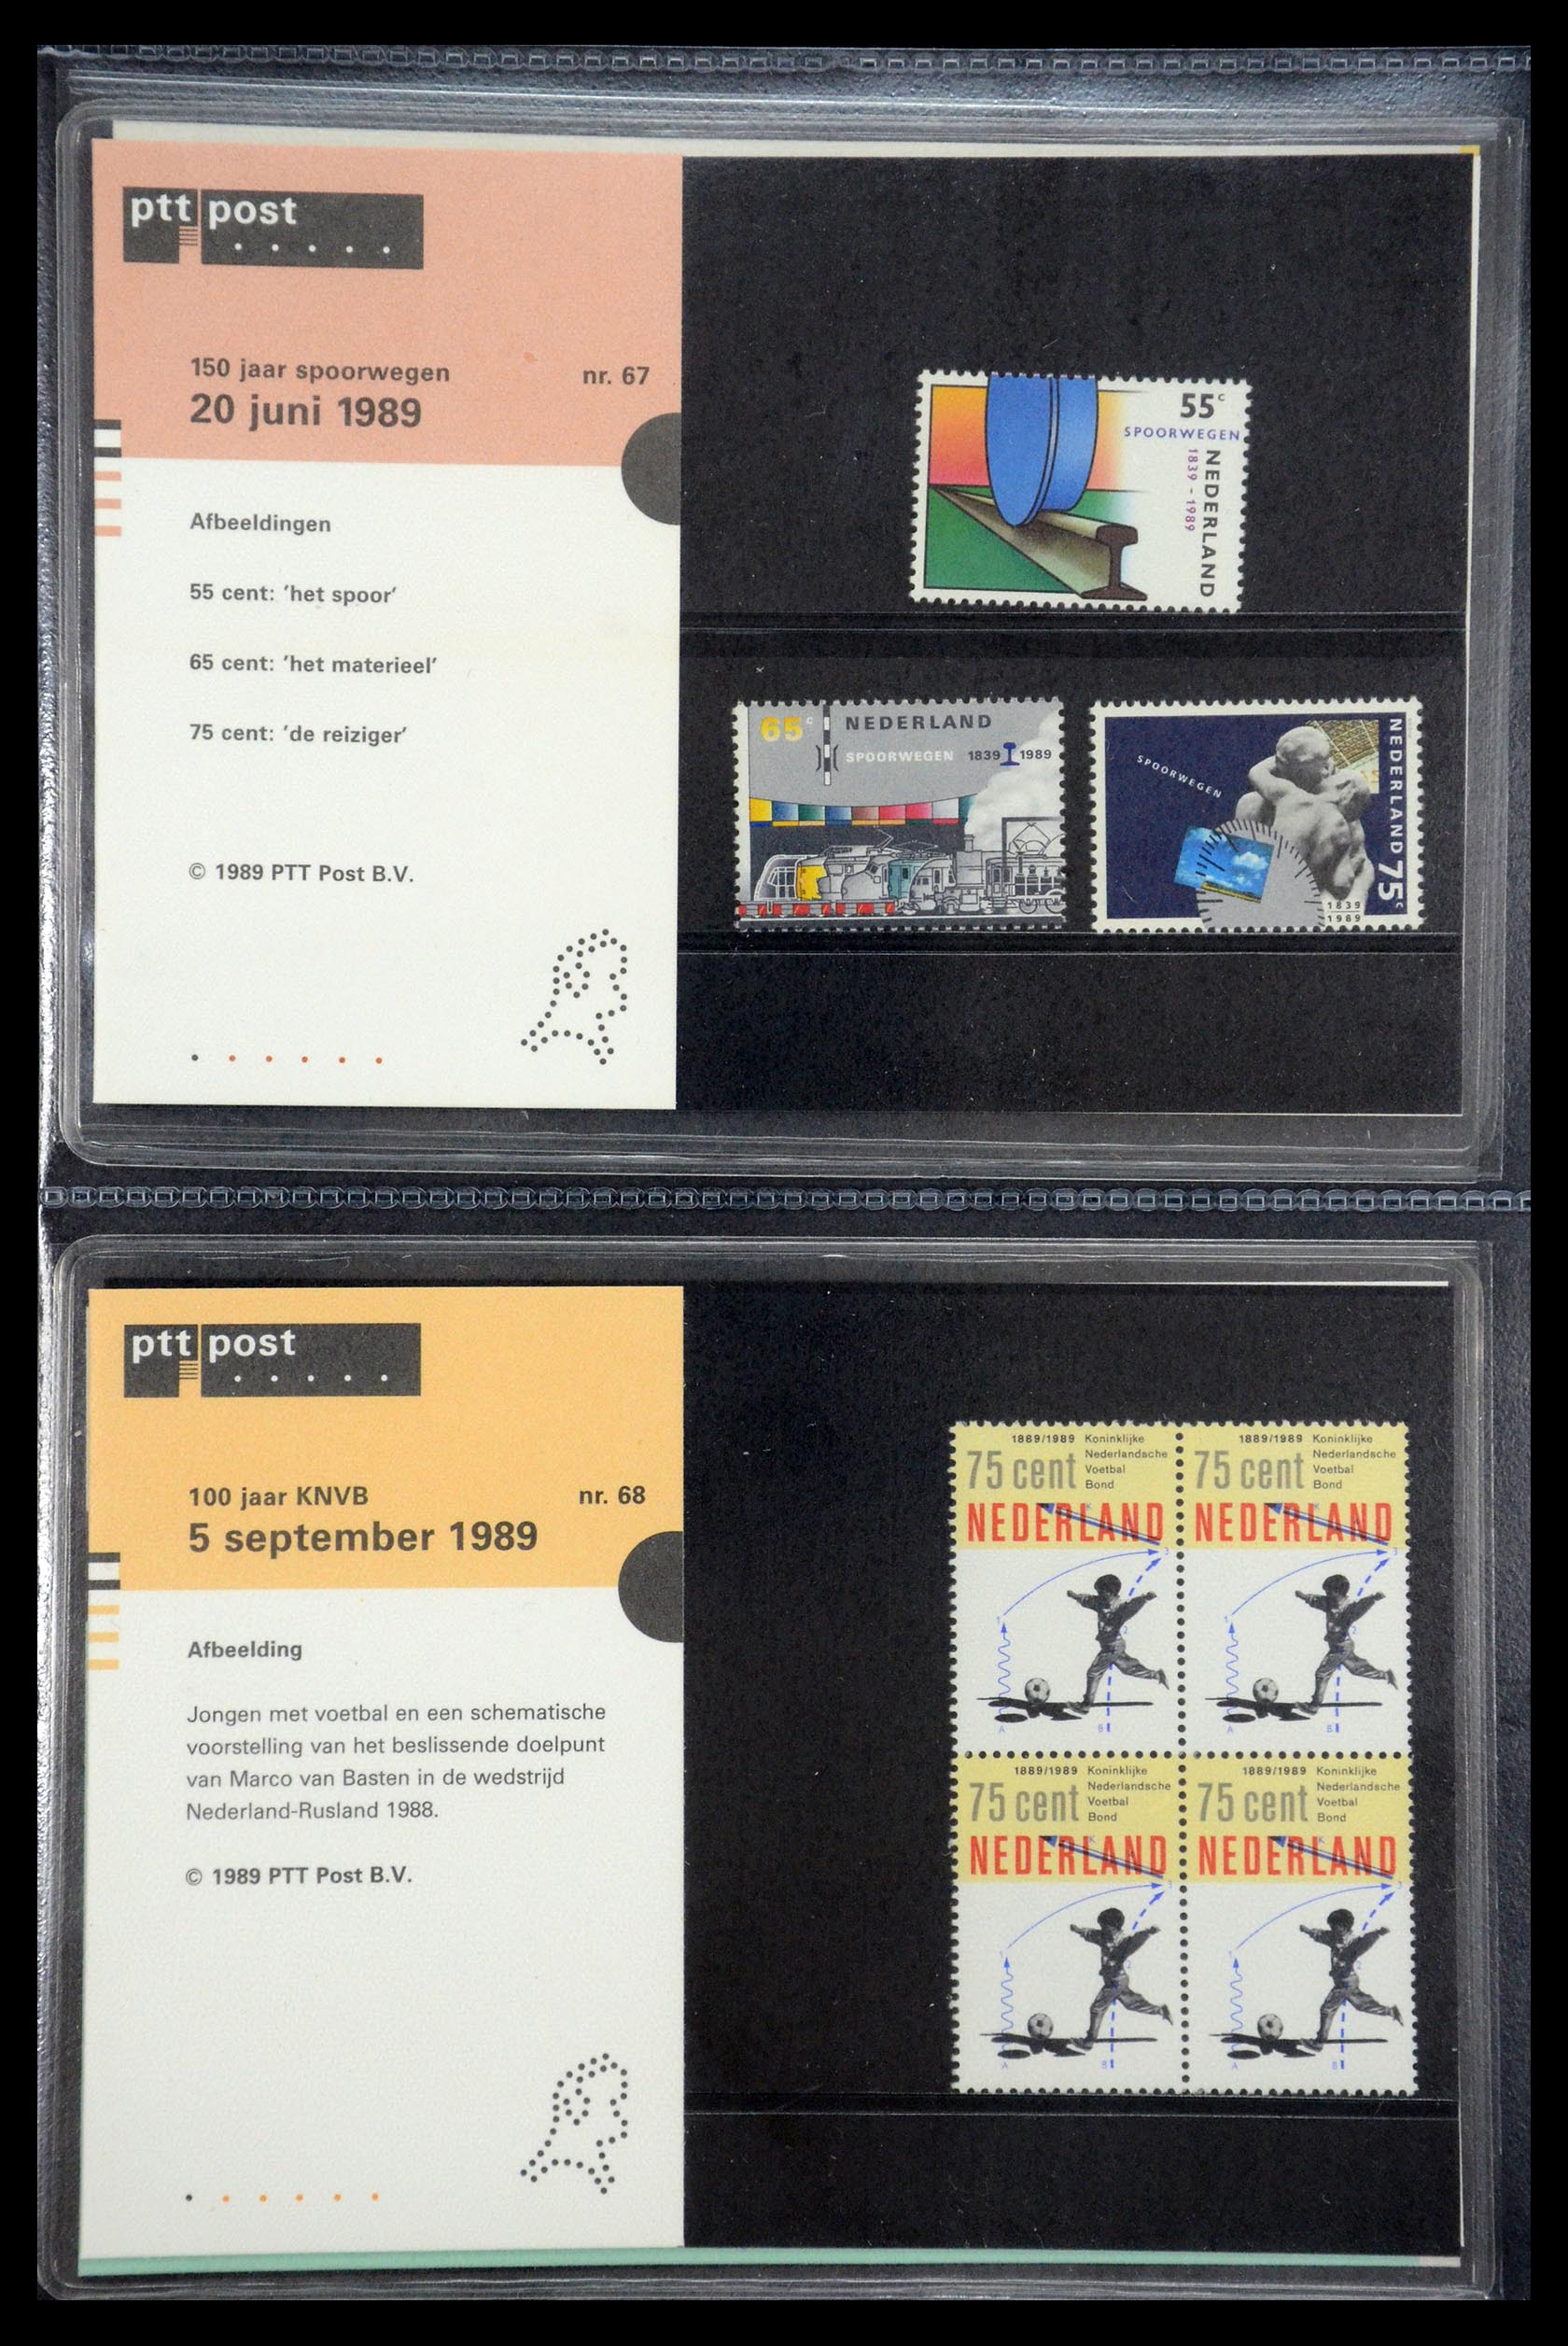 35187 034 - Stamp Collection 35187 Netherlands PTT presentation packs 1982-2019!